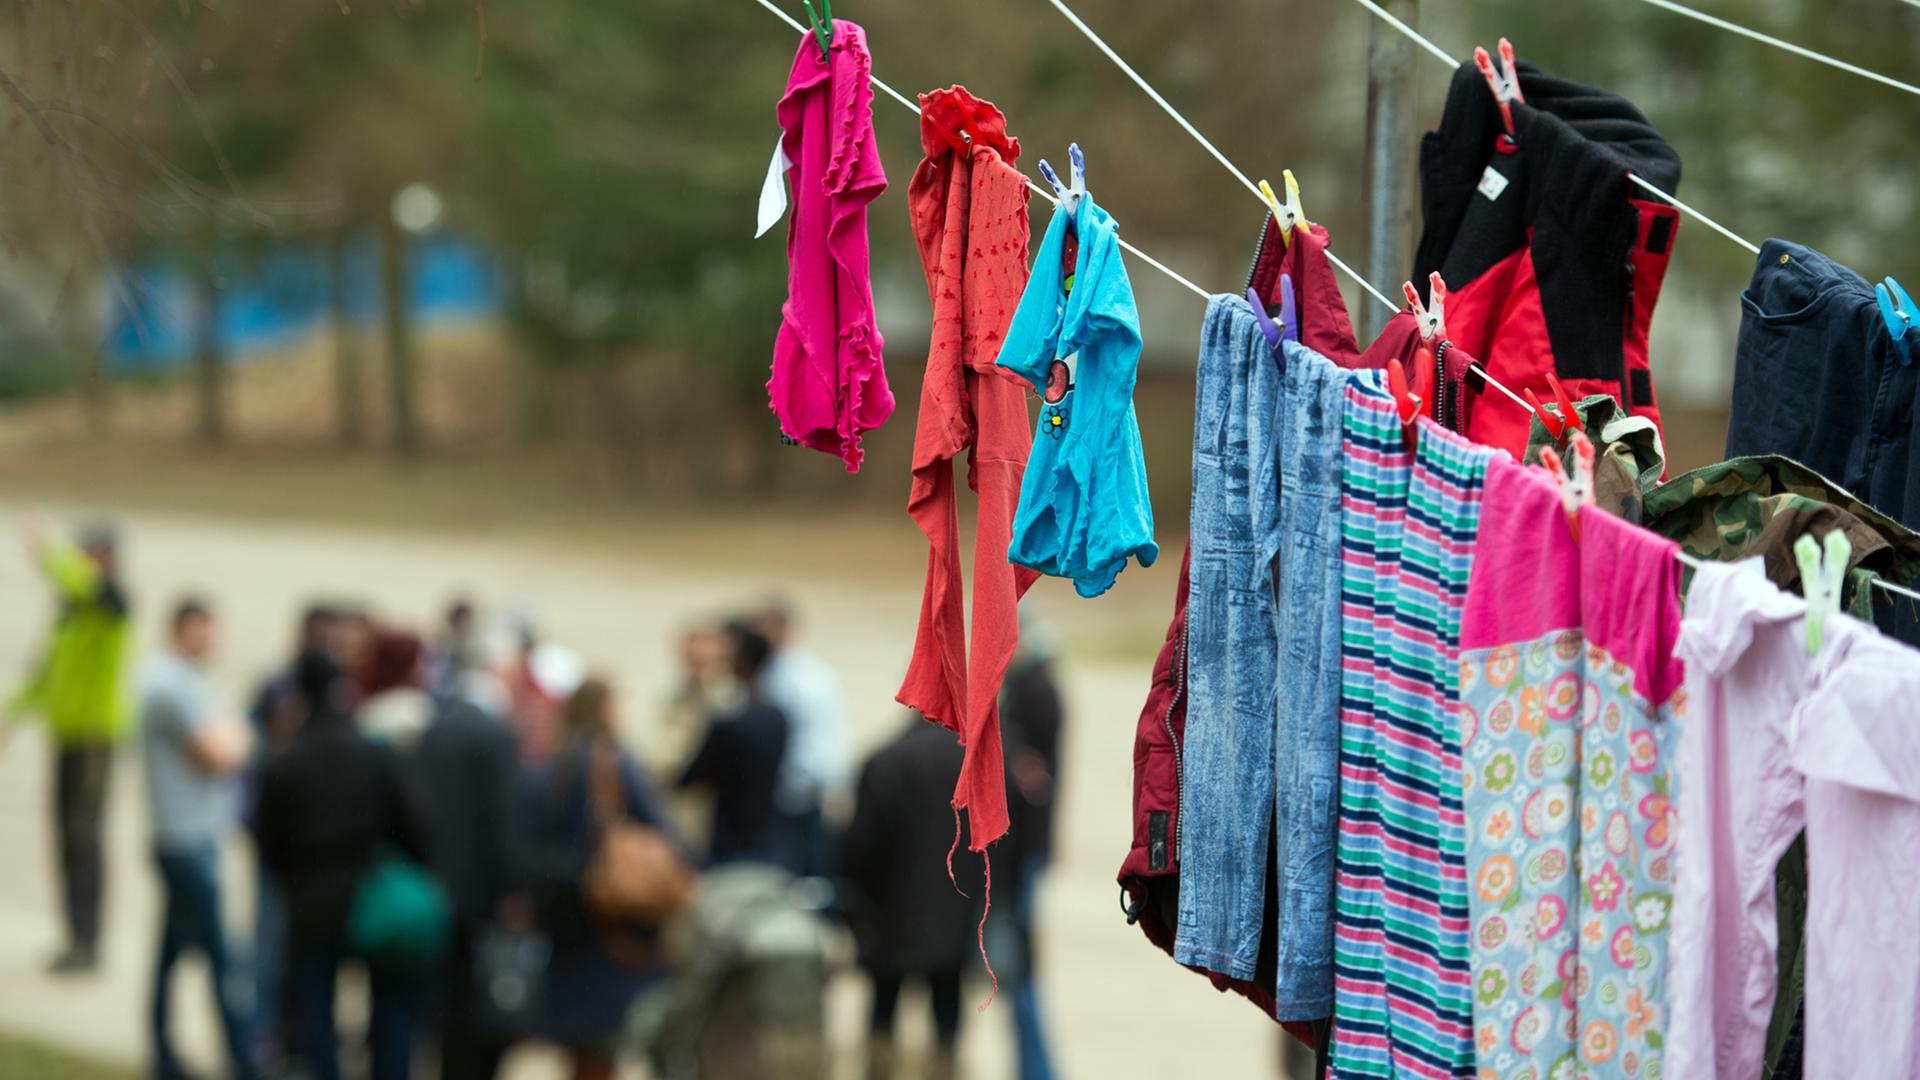 Frisch gewaschene Wäsche hängt auf einer Leine vor einem Asylbewerberheim in Garzau-Garzin nahe Strausberg im Landkreis Märkisch-Oderland (Brandenburg).